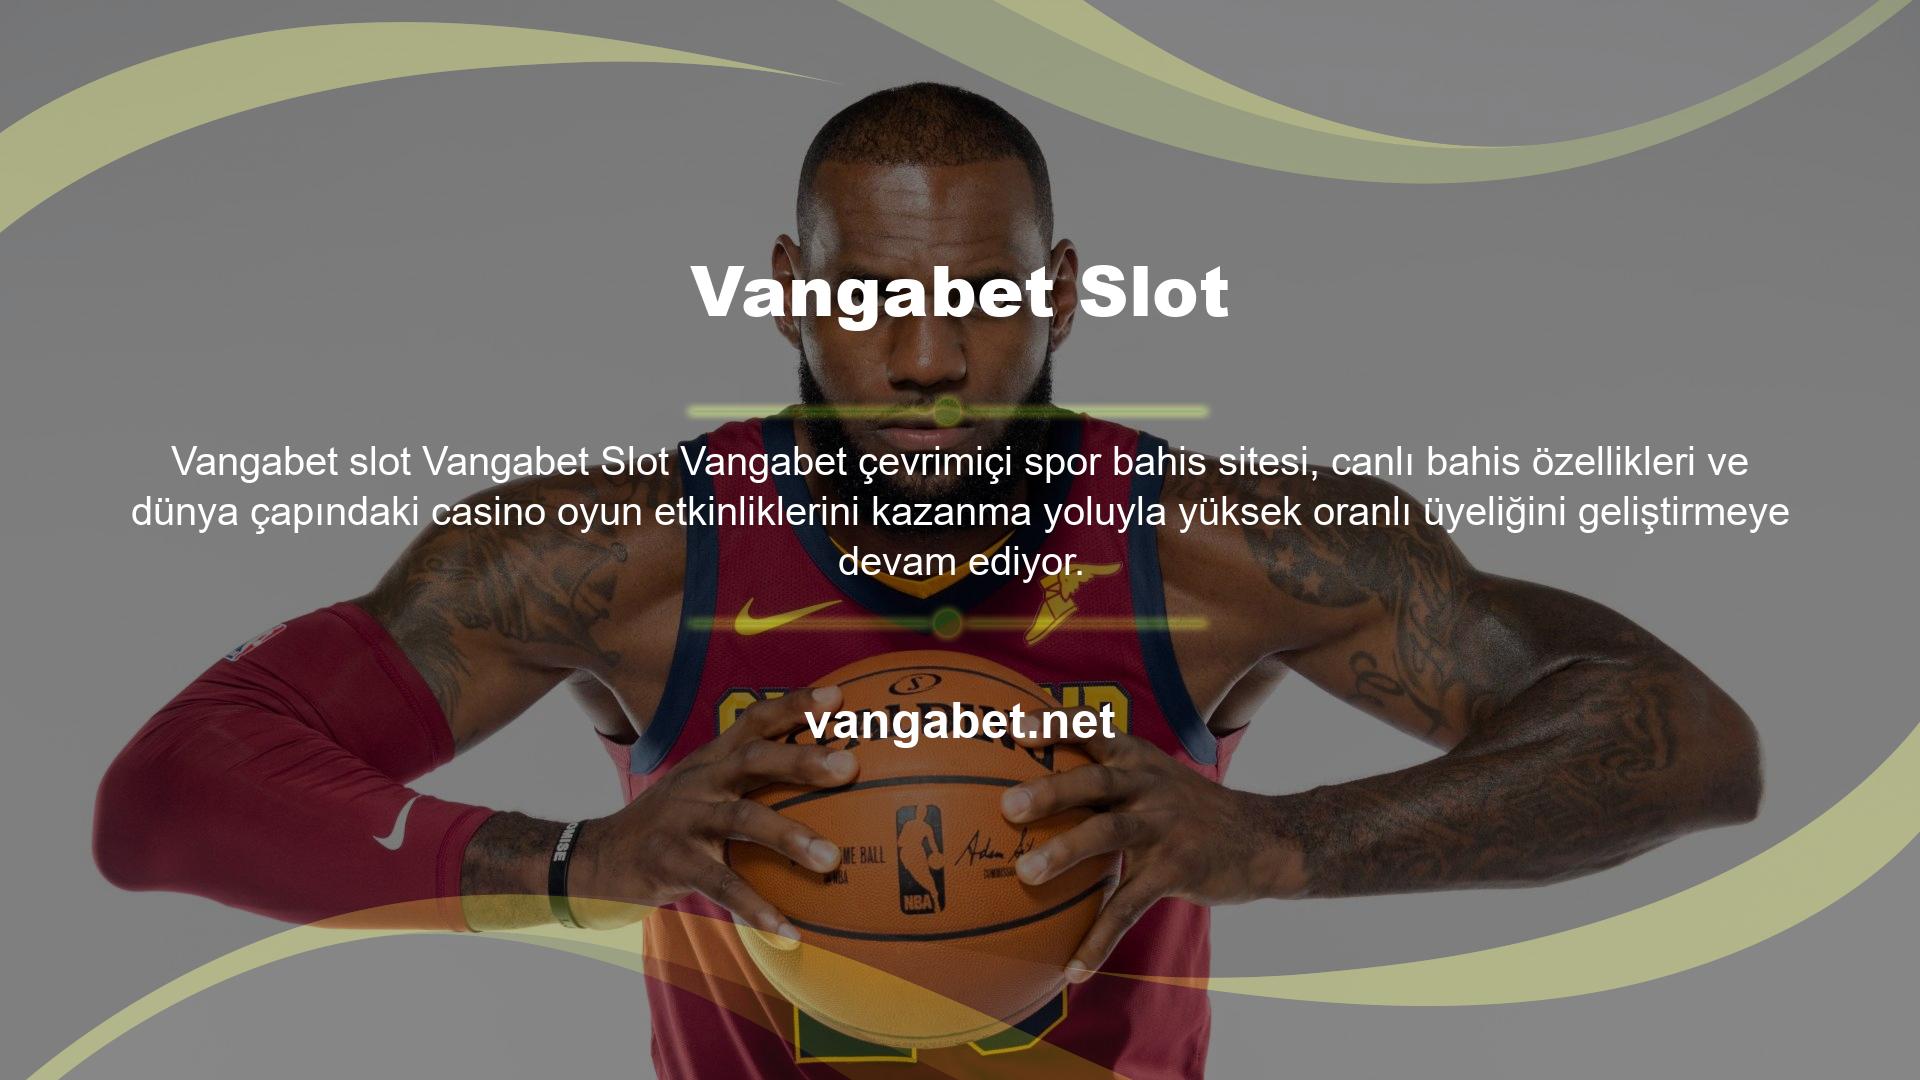 Türk kullanıcılara hitap eden bu firma aynı zamanda Vangabet slot makinesinin de sahibidir